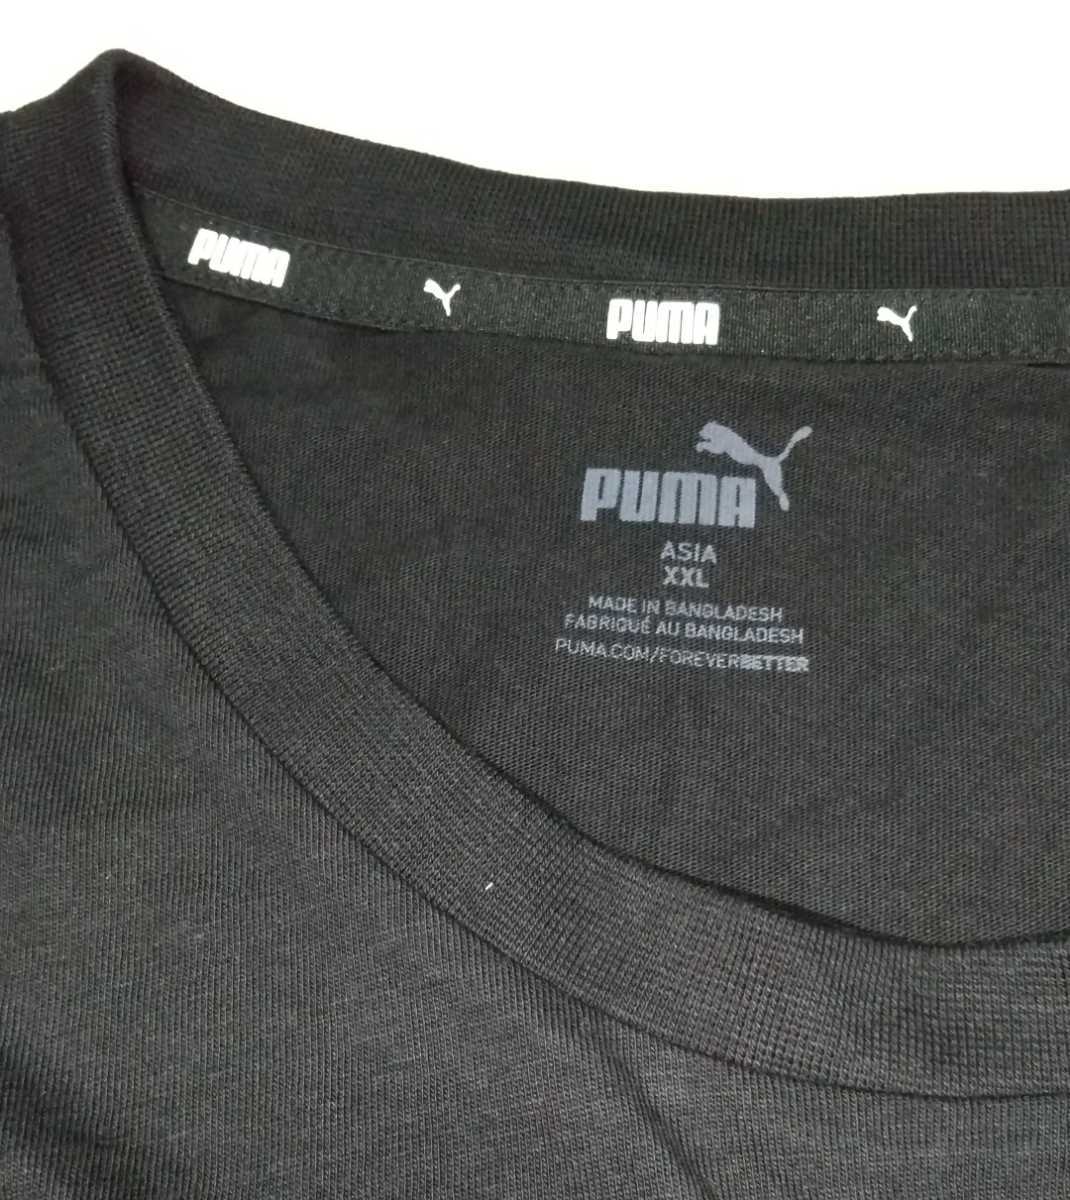 未使用 PUMA ボックス ビッグ ロゴ プリント 半袖Tシャツ メンズ サイズ XXL 102-106 プーマ ジャパン 581386 ブラック黒ホワイト白 綿100%_※サイズはXXLです。